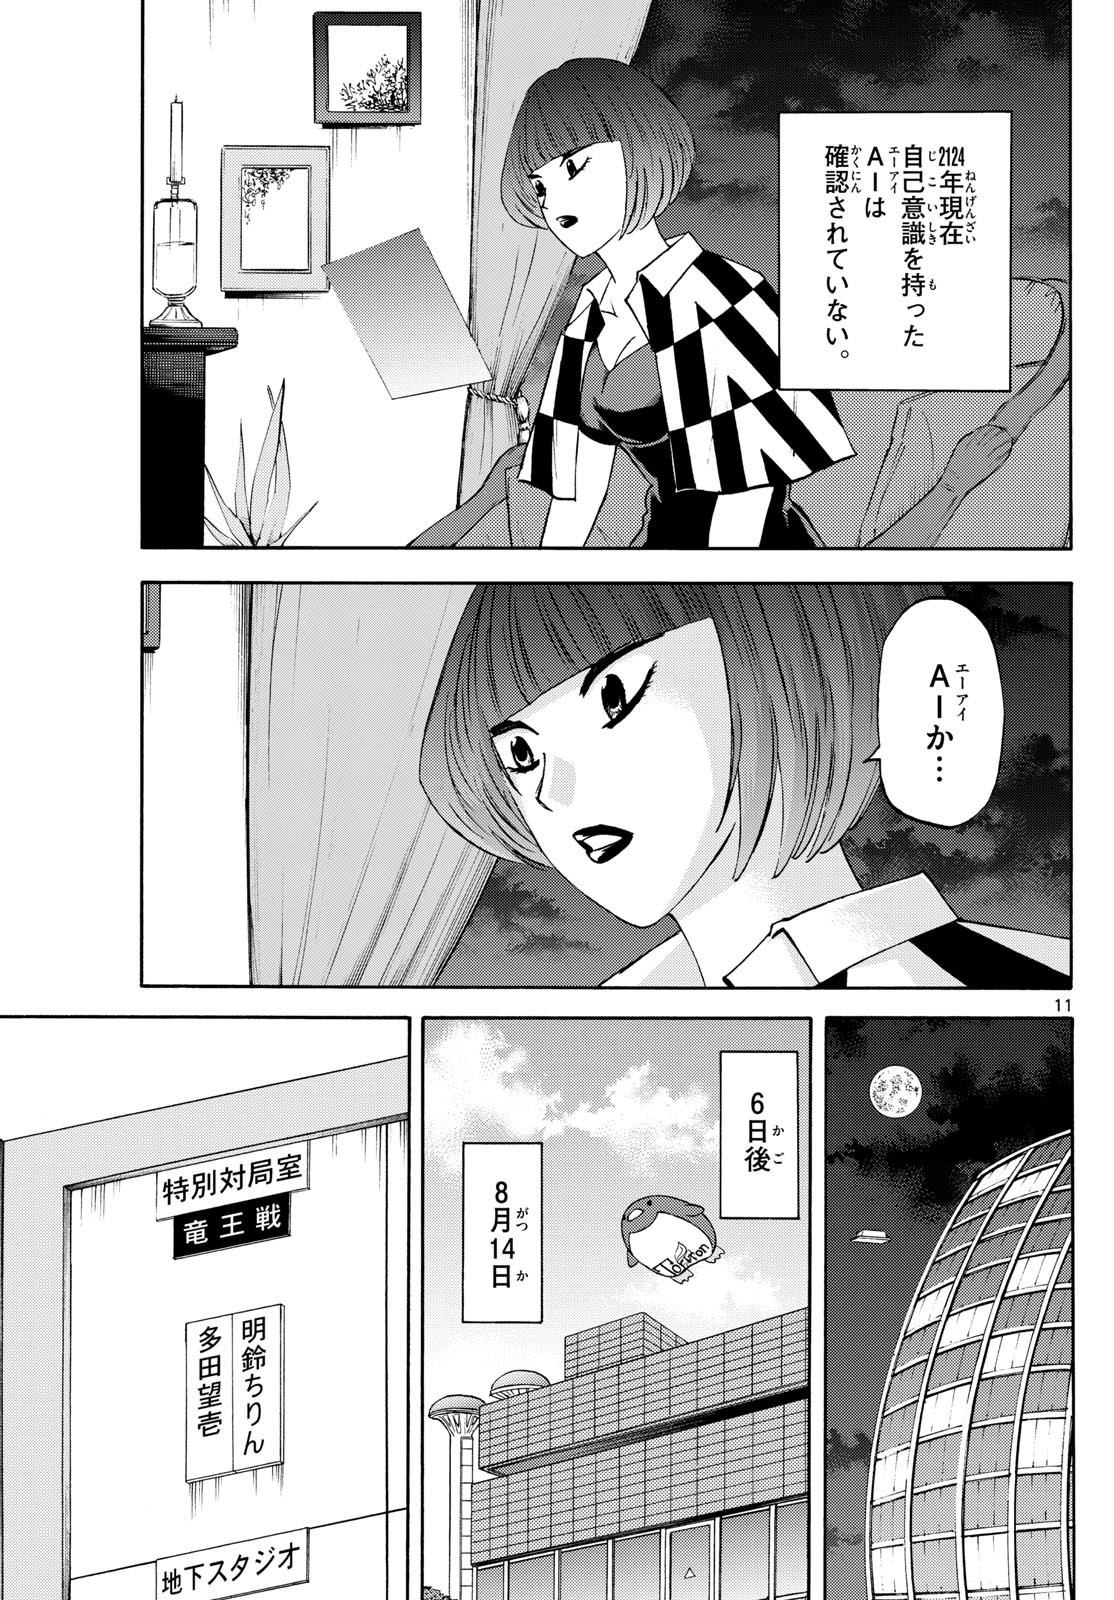 Tatsu to Ichigo - Chapter 199 - Page 11